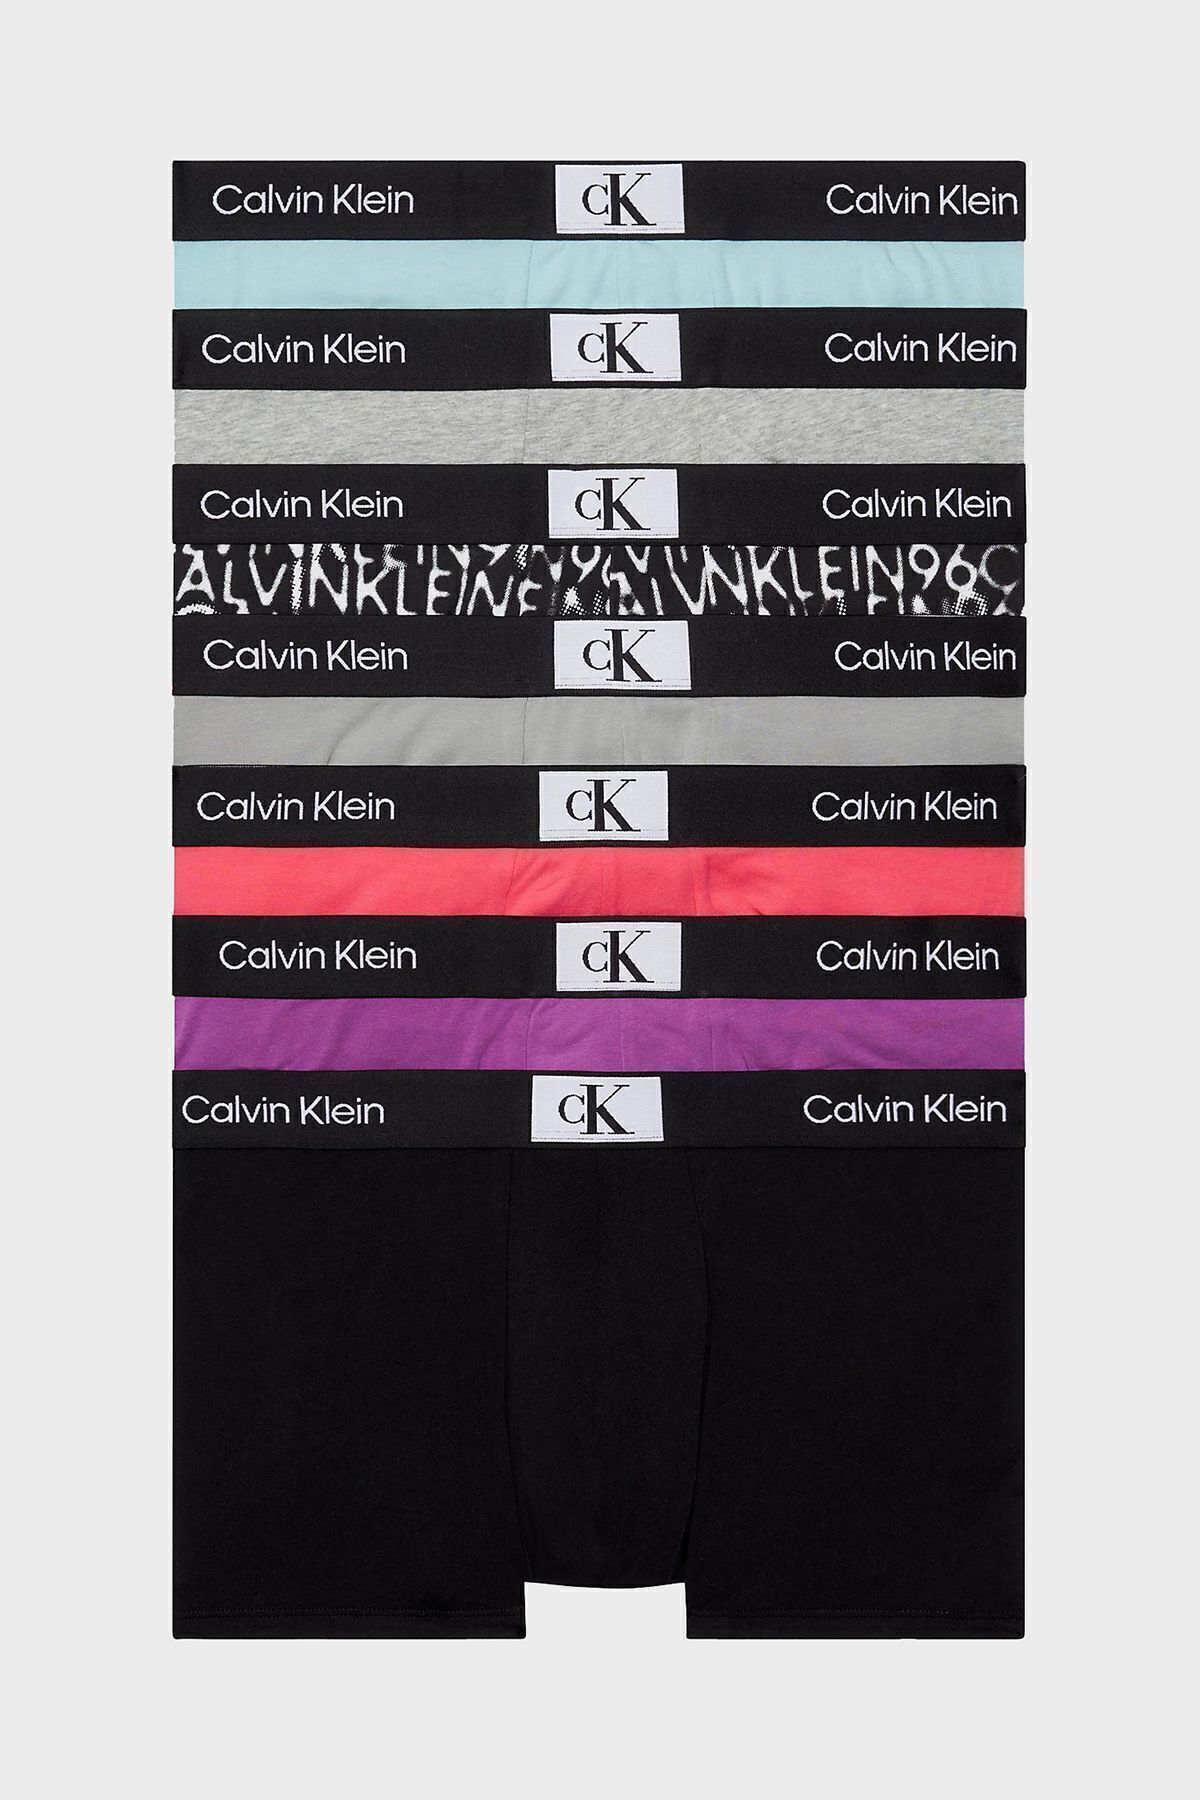 Calvin Klein Erkek Marka Logolu Elastik Bantlı Günlük Kullanıma Uygun Siyah-gri-açık Mavi- Pembe-mor-siyah Boxer